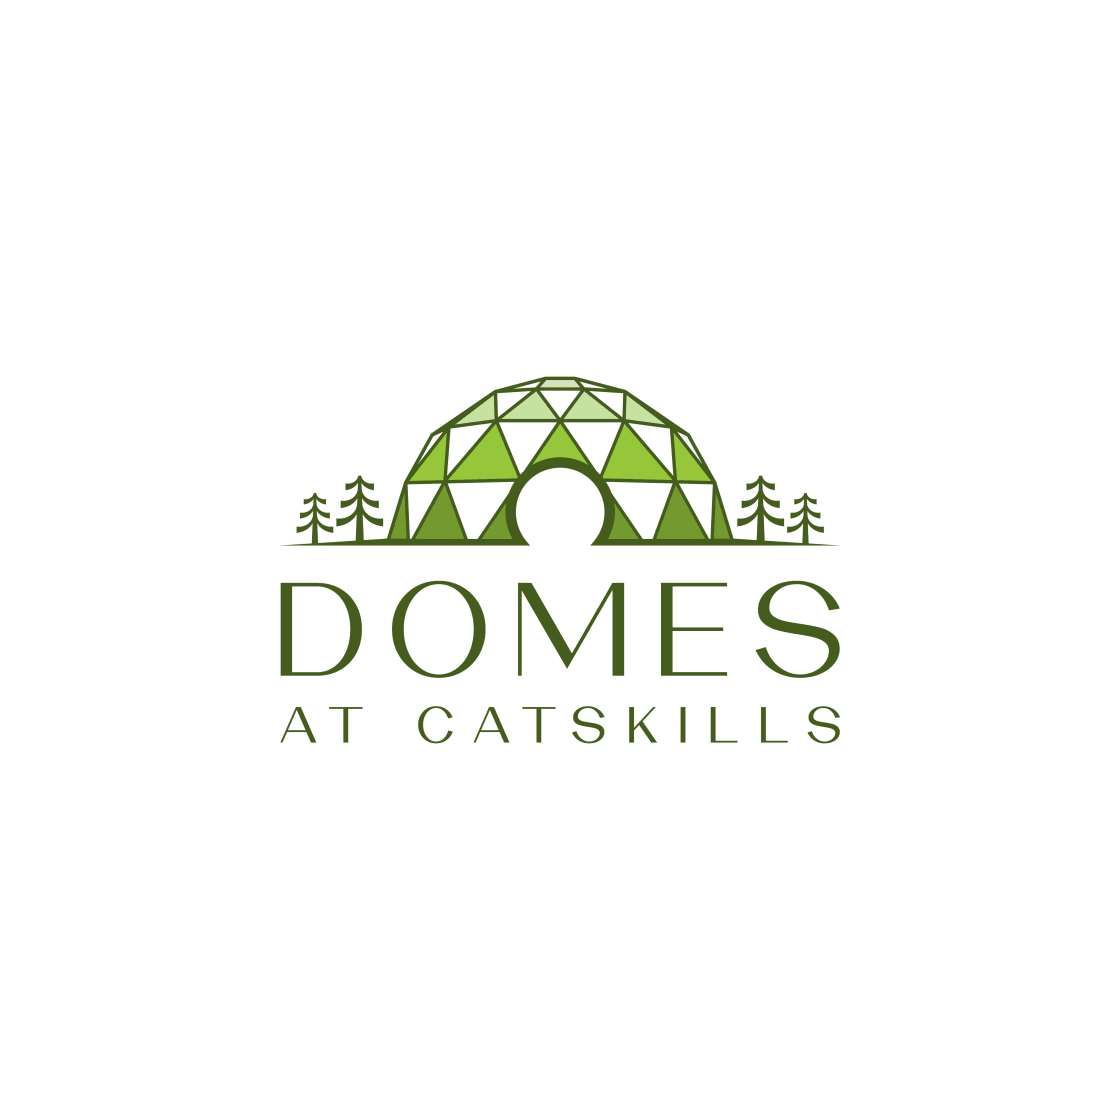 The Domes At Catskills